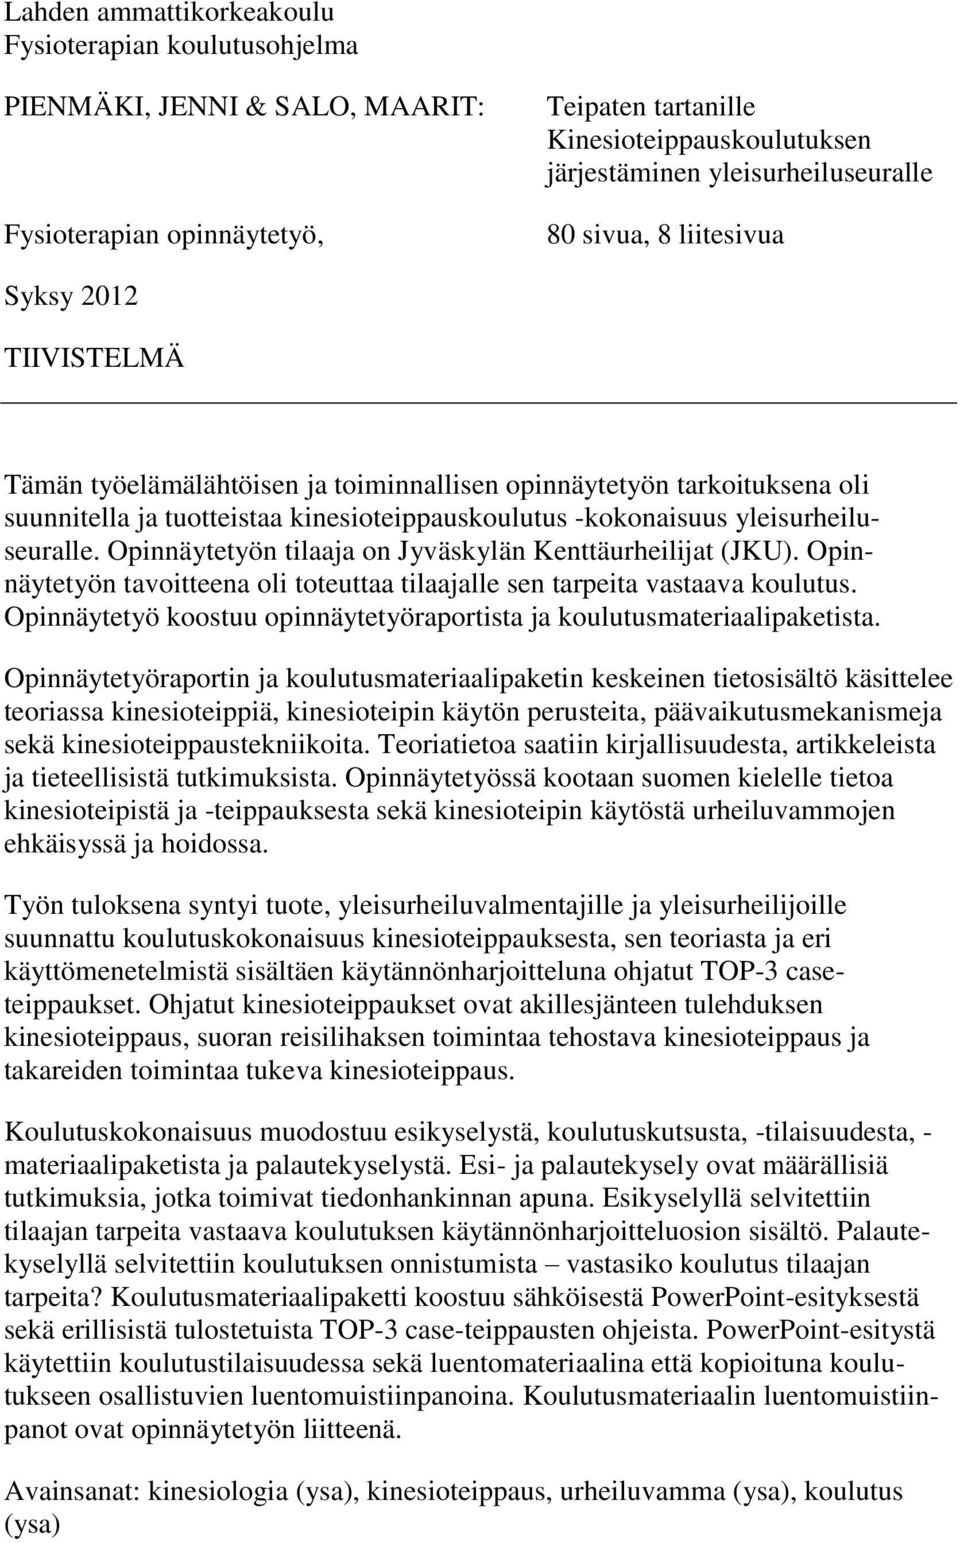 yleisurheiluseuralle. Opinnäytetyön tilaaja on Jyväskylän Kenttäurheilijat (JKU). Opinnäytetyön tavoitteena oli toteuttaa tilaajalle sen tarpeita vastaava koulutus.